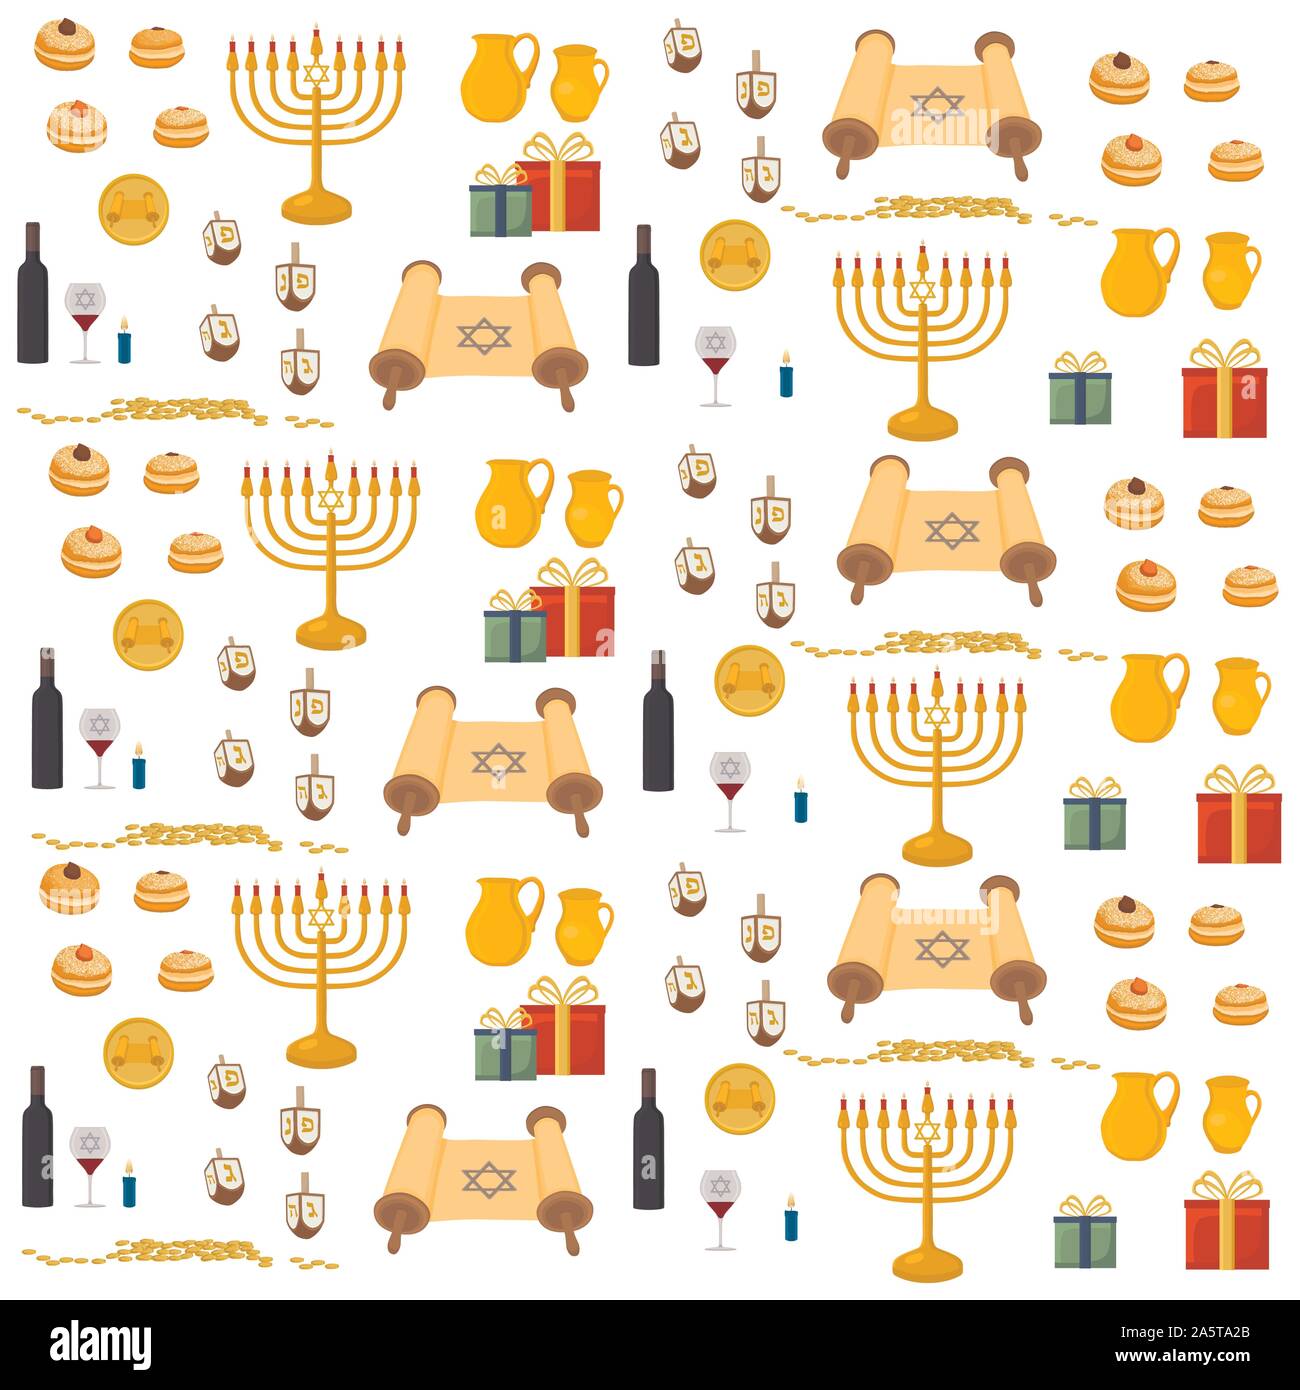 Vector Illustration für Chanukka ist groß jüdische Feiertag. Chanukka Muster bestehend aus Davidstern, menora sufganiyot Donuts, Dekoration, Ton j Stock Vektor